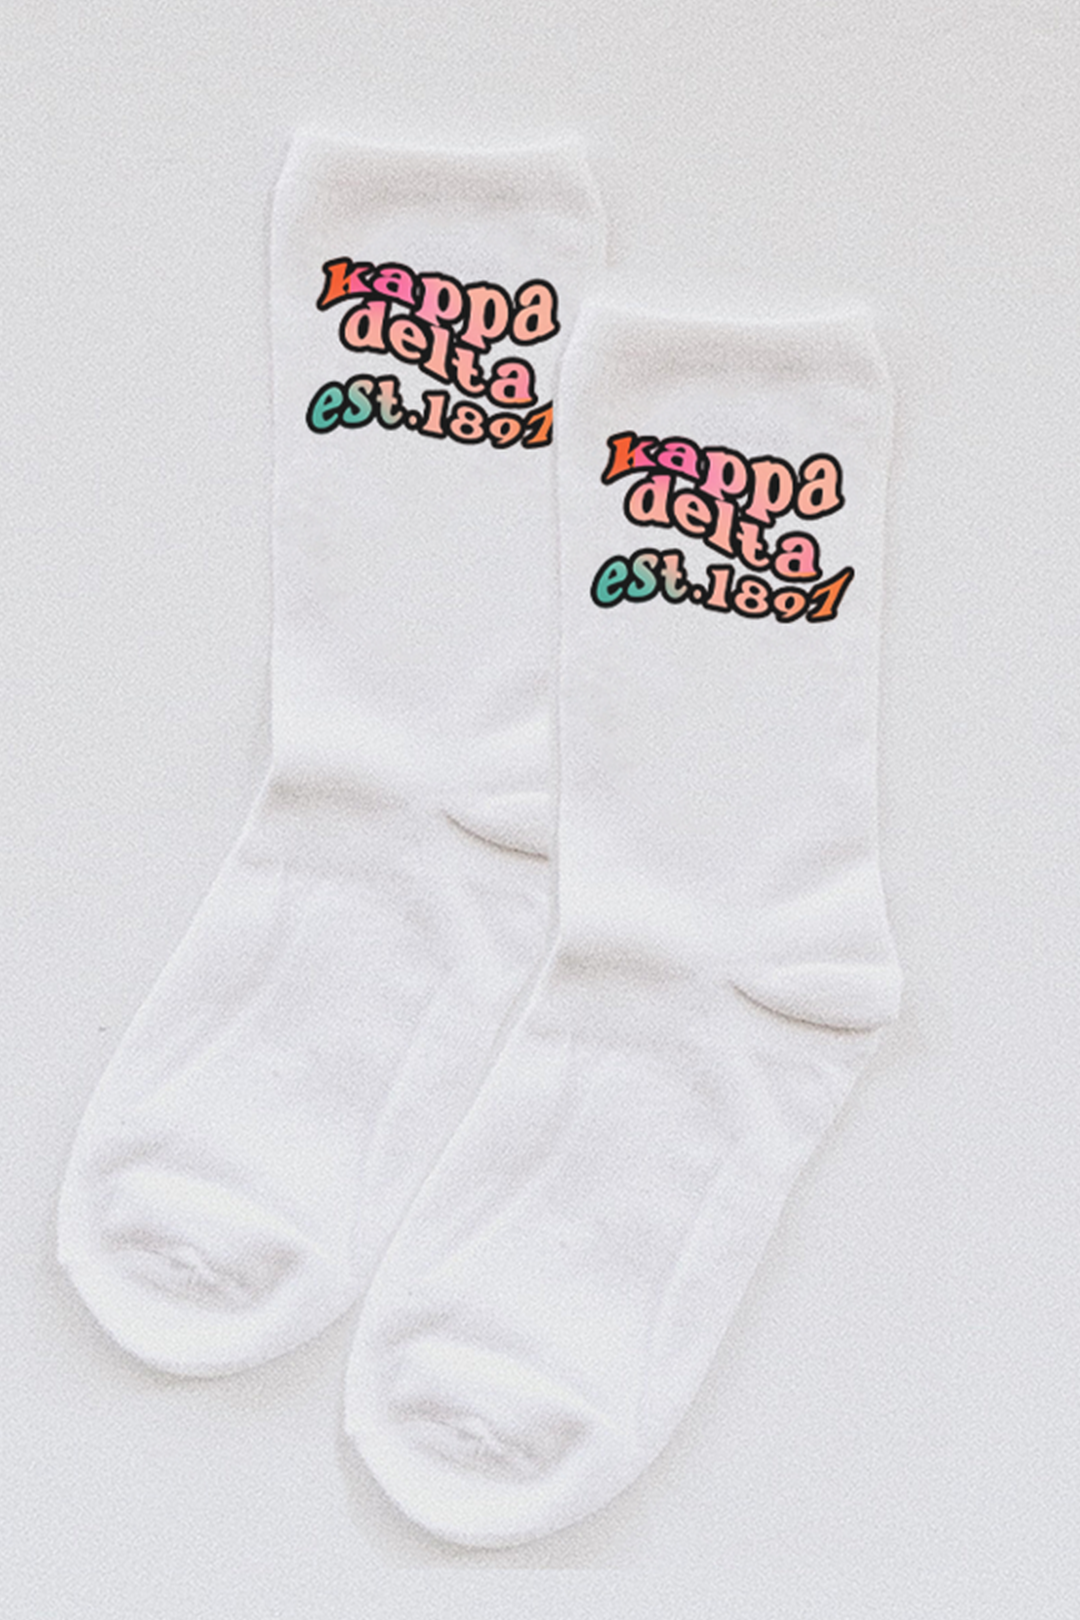 Gradient socks - Kappa Delta